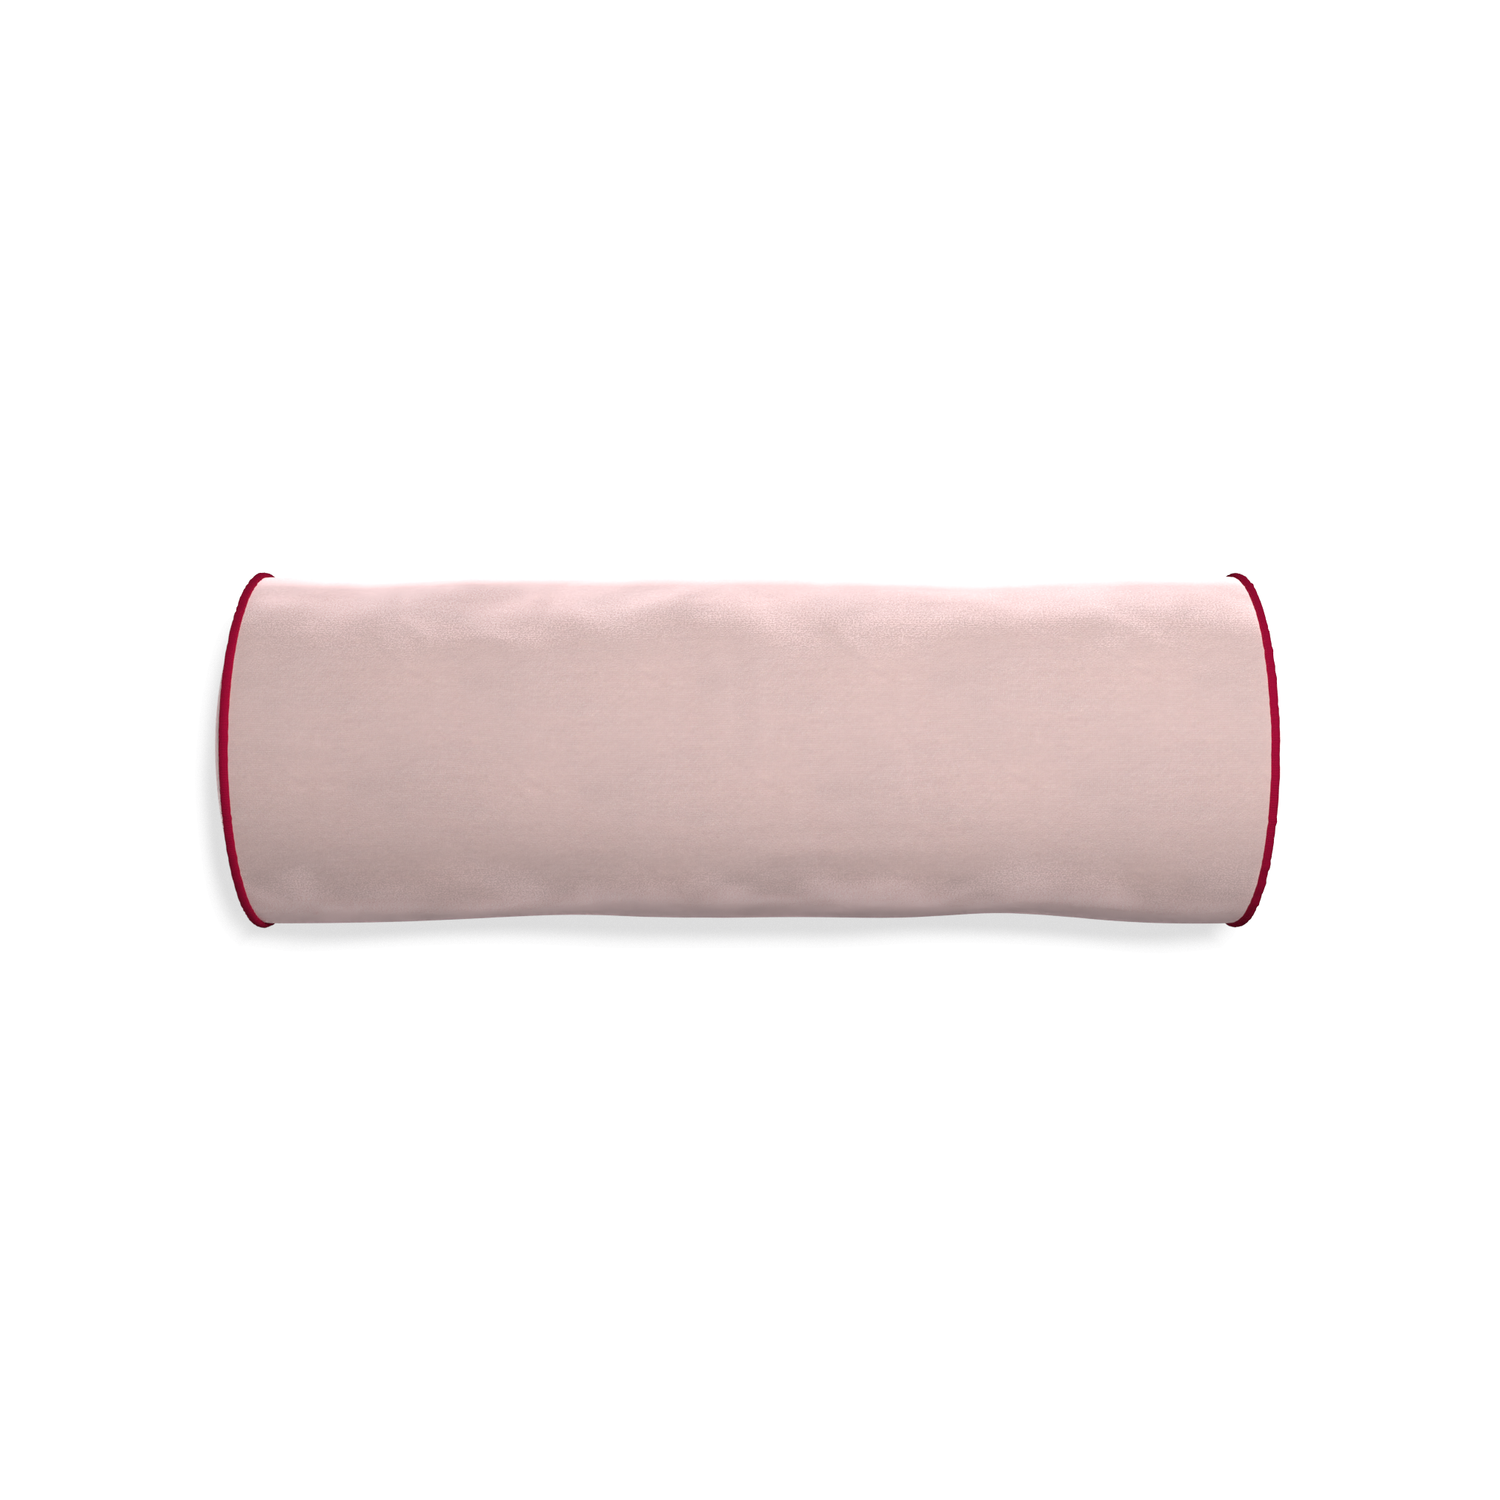 bolster light pink velvet pillow with dark red piping